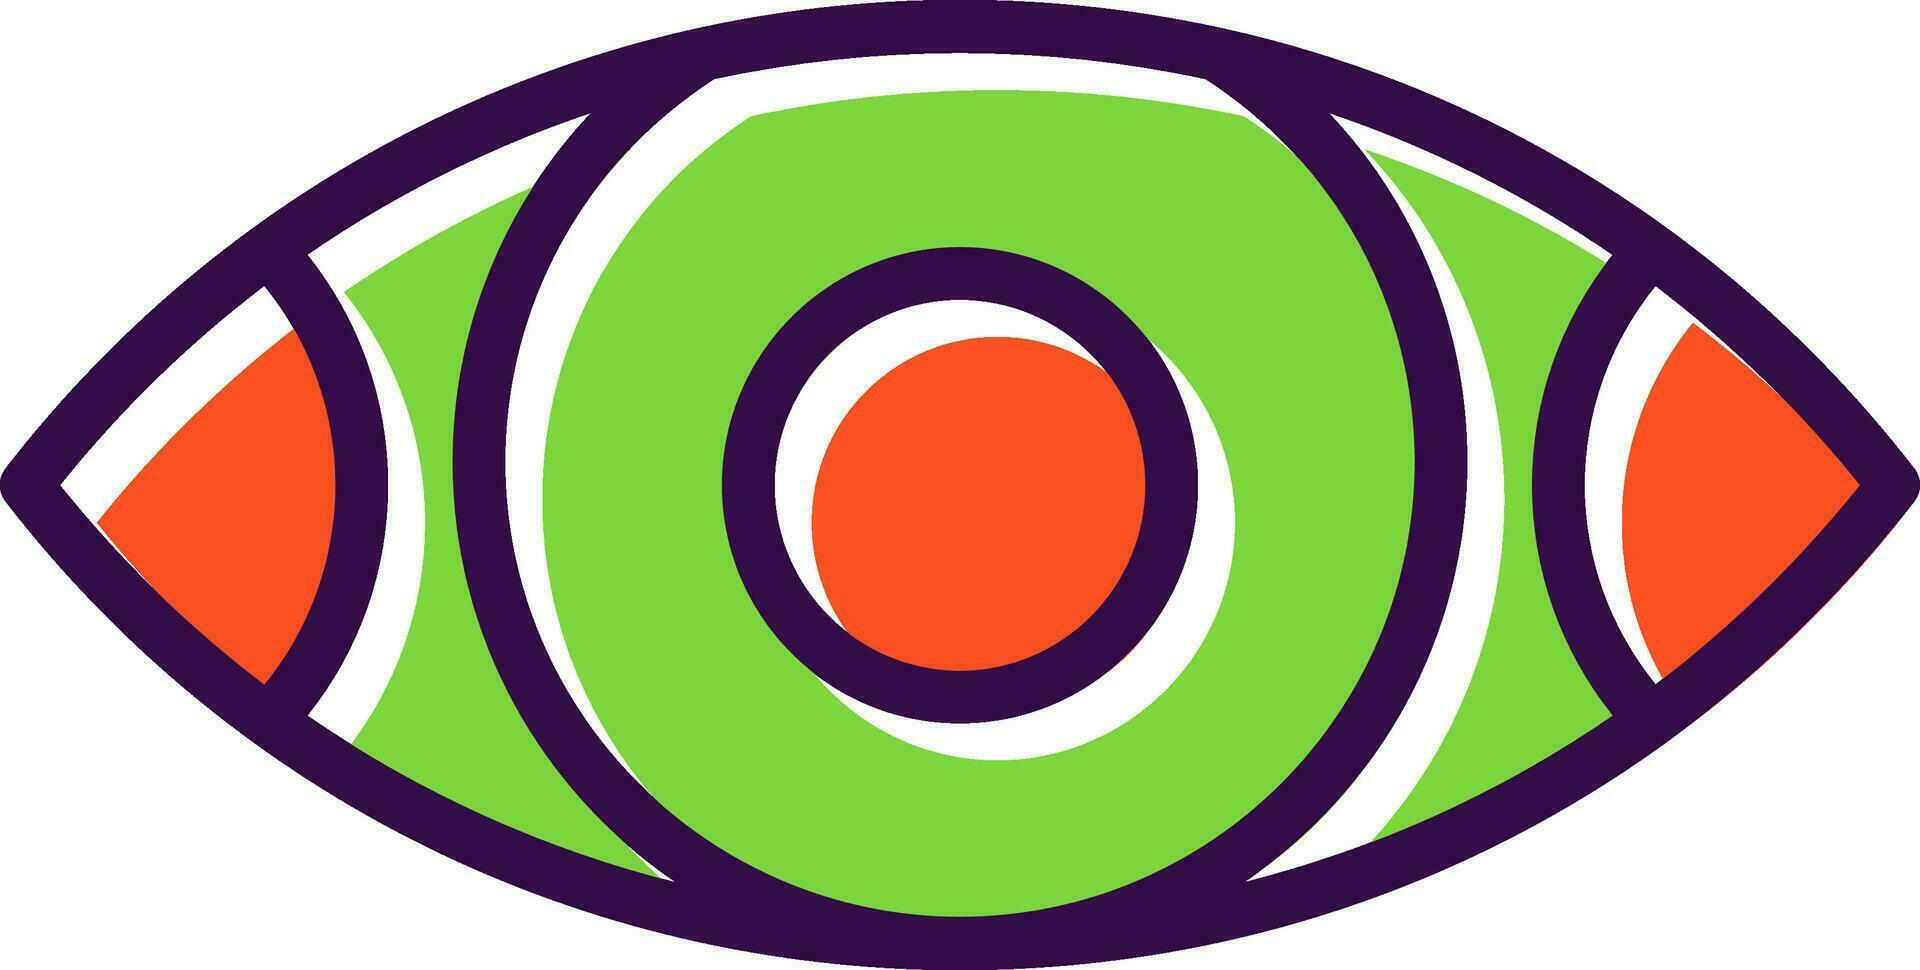 design de ícone de vetor de olho